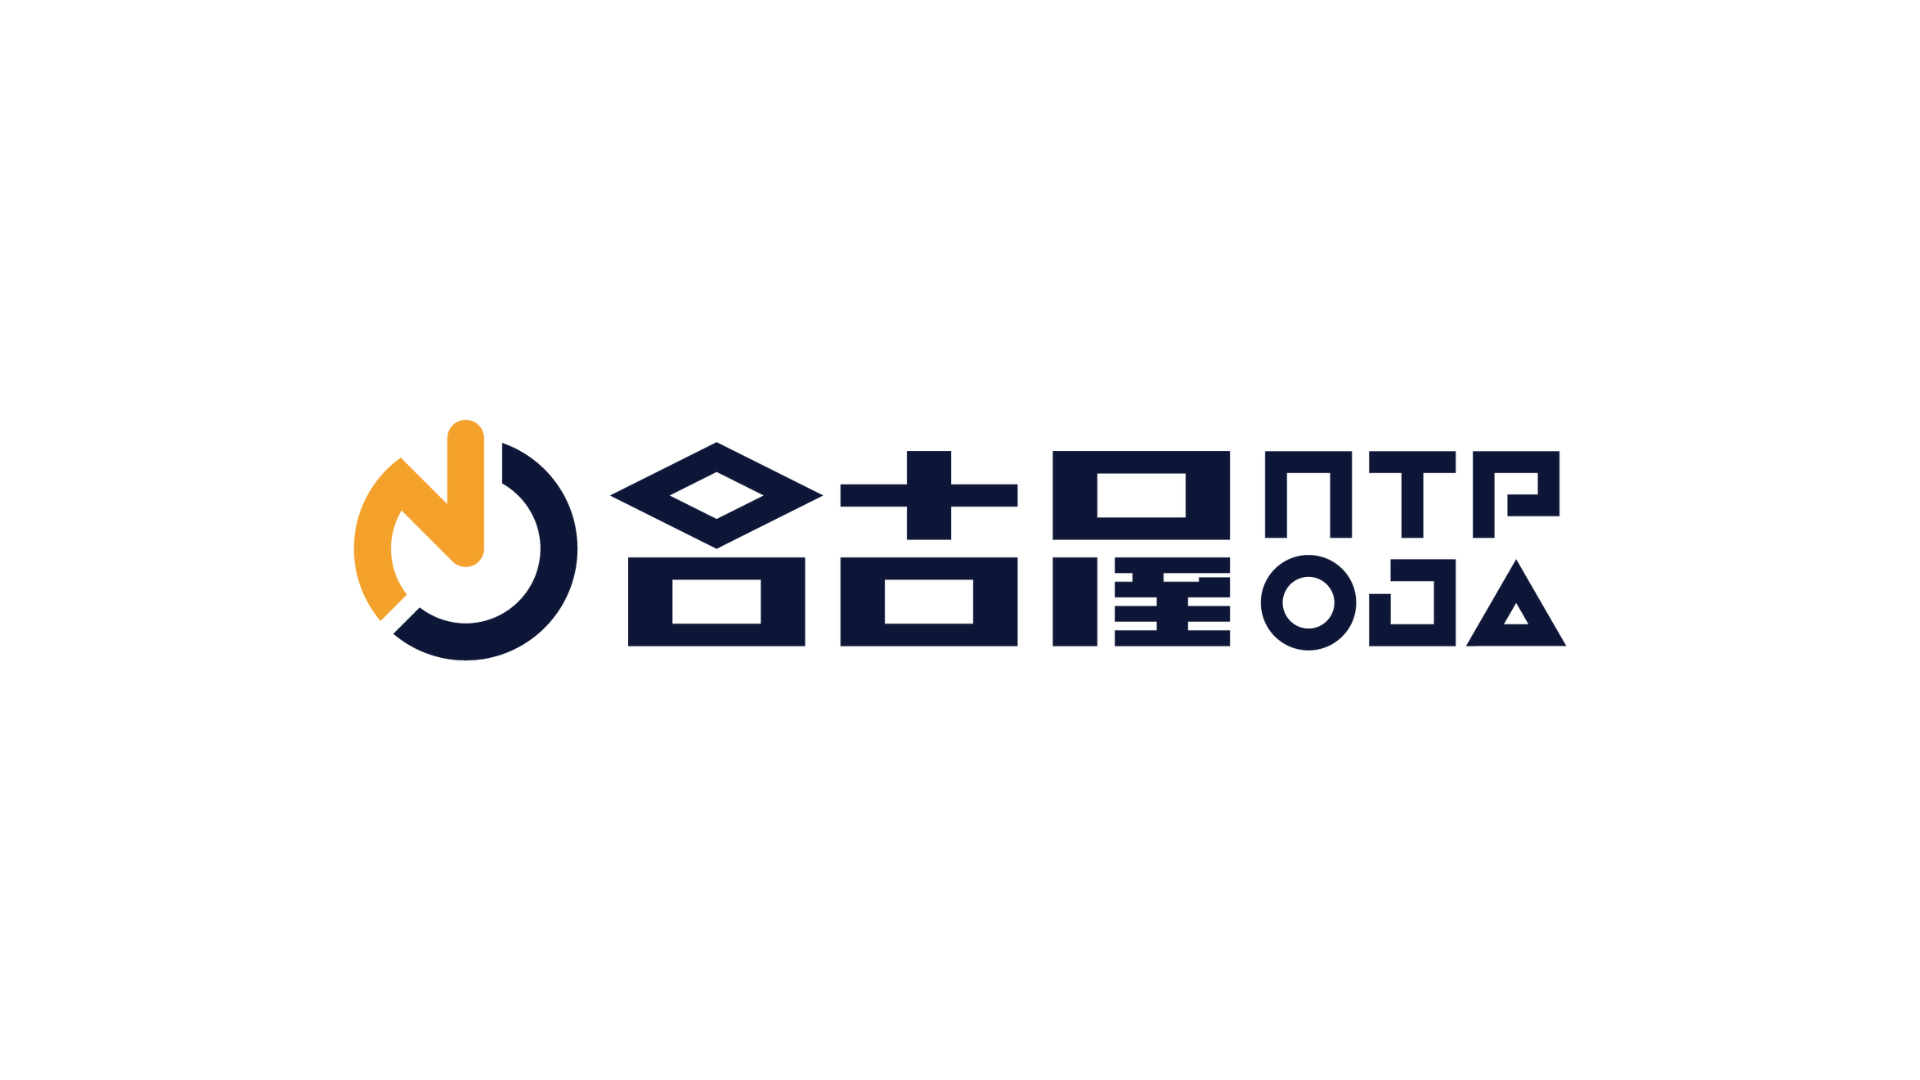 名古屋OJA eスポーツチーム 格闘部門「名古屋NTPOJA」所属 オニキ選手移籍のお知らせ